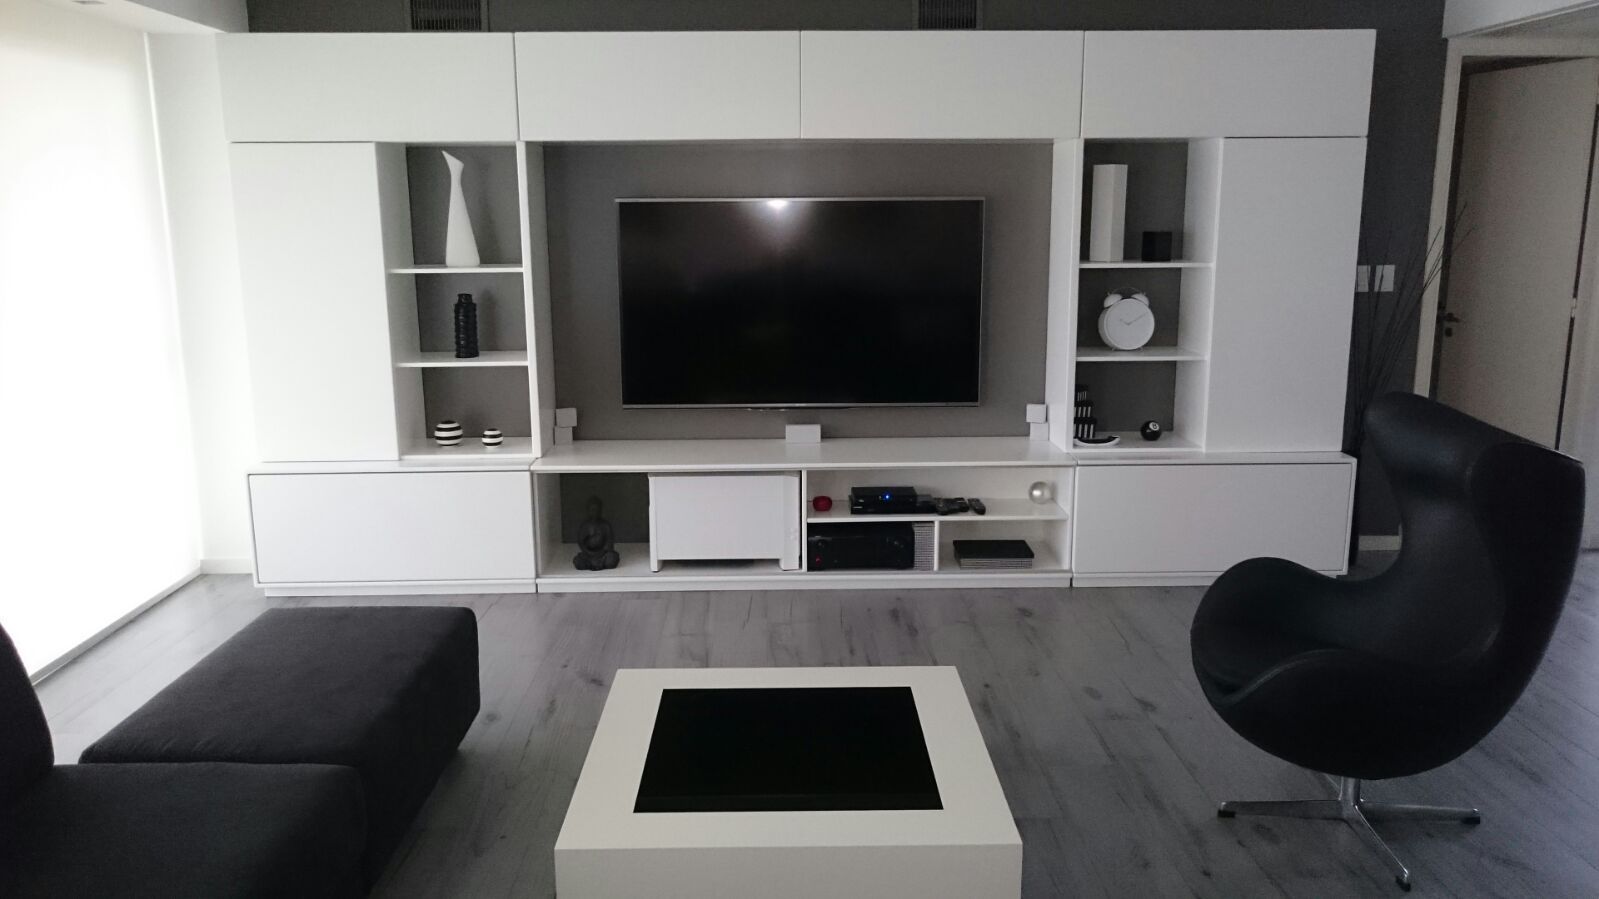 Entre el blanco y el negro los grises se hacen presentes en este living moderno. dymmuebles Salas de estilo moderno Estanterías